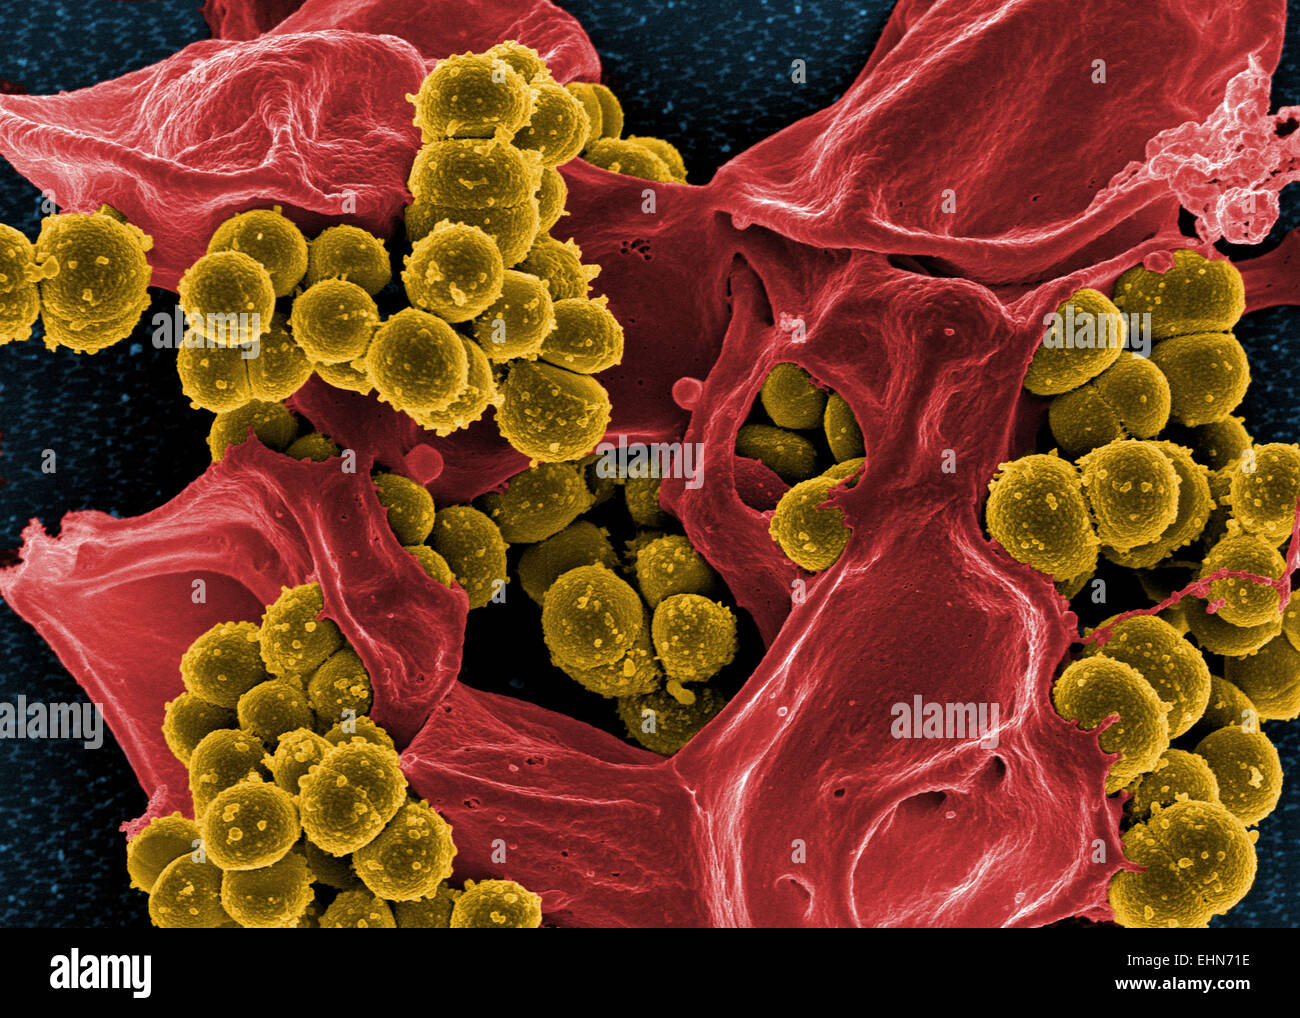 Farbige scanning Electron Schliffbild (SEM) von Methicillin-resistenten Staphylococcus Aureus (MRSA) Bakterien. Stockfoto